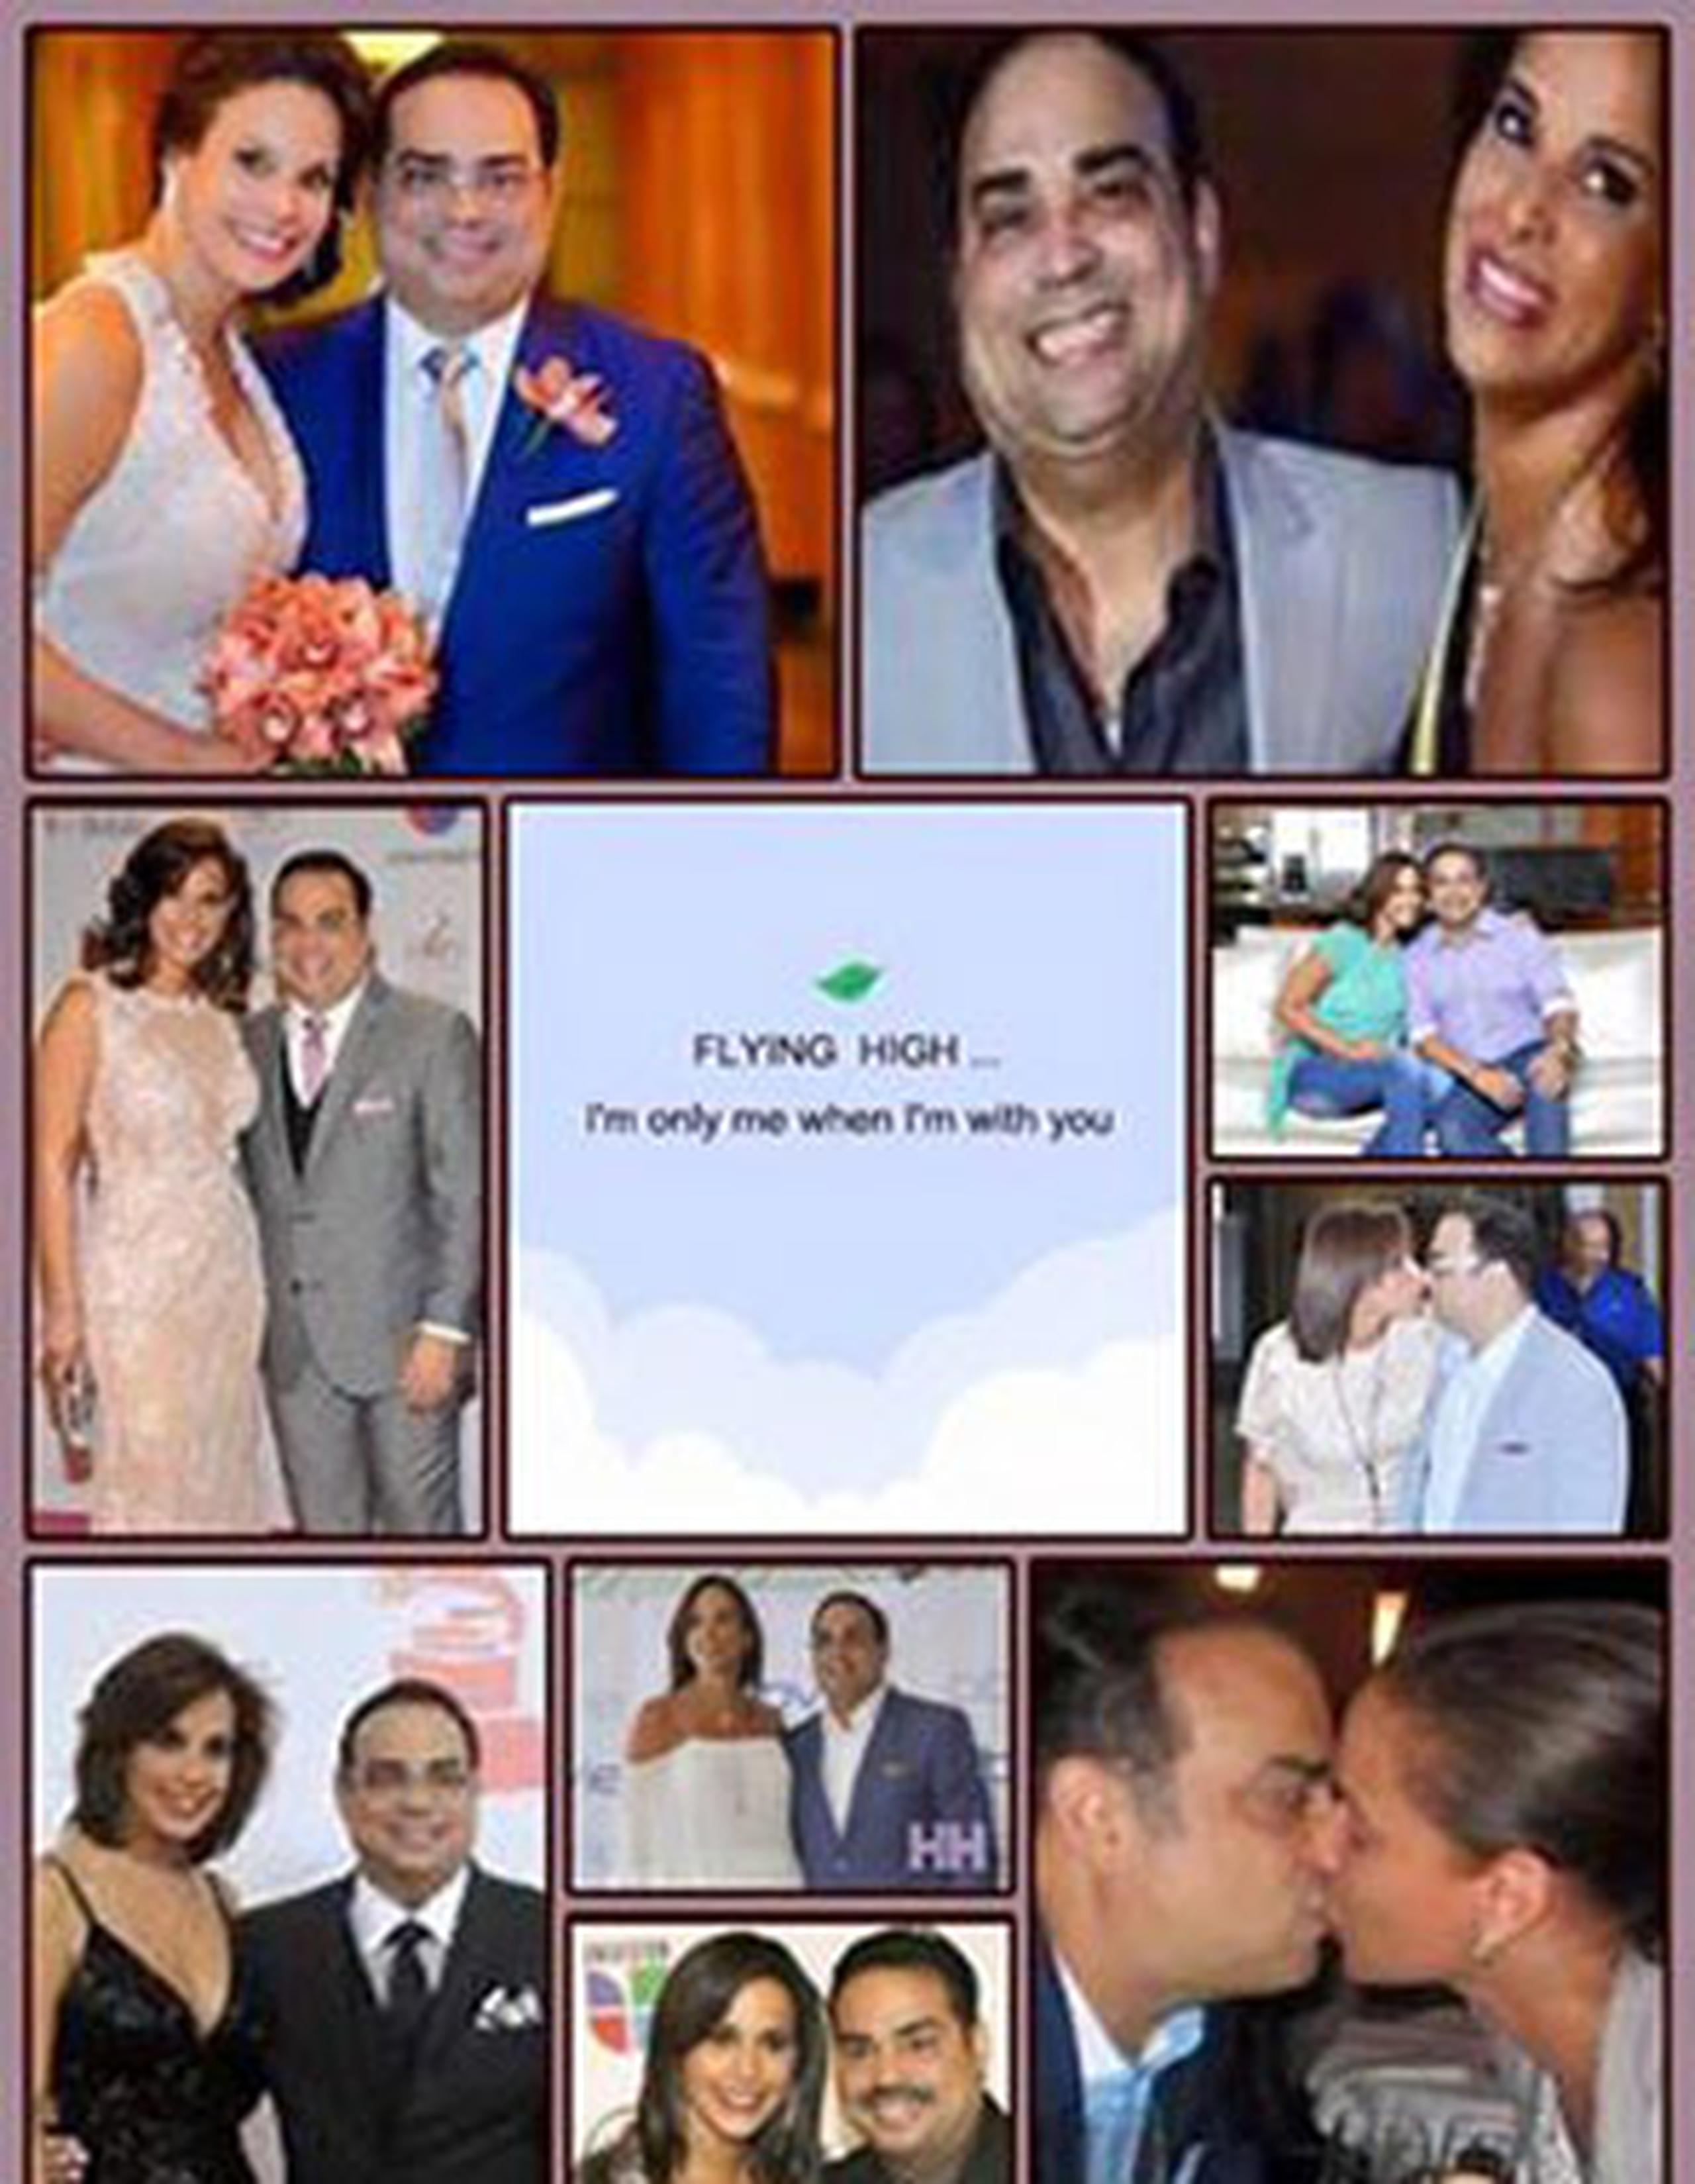 La esposa el salsero, la presentadora Alexandra Malagón, también lo felicitó efusivamente en las redes sociales. (Facebook)